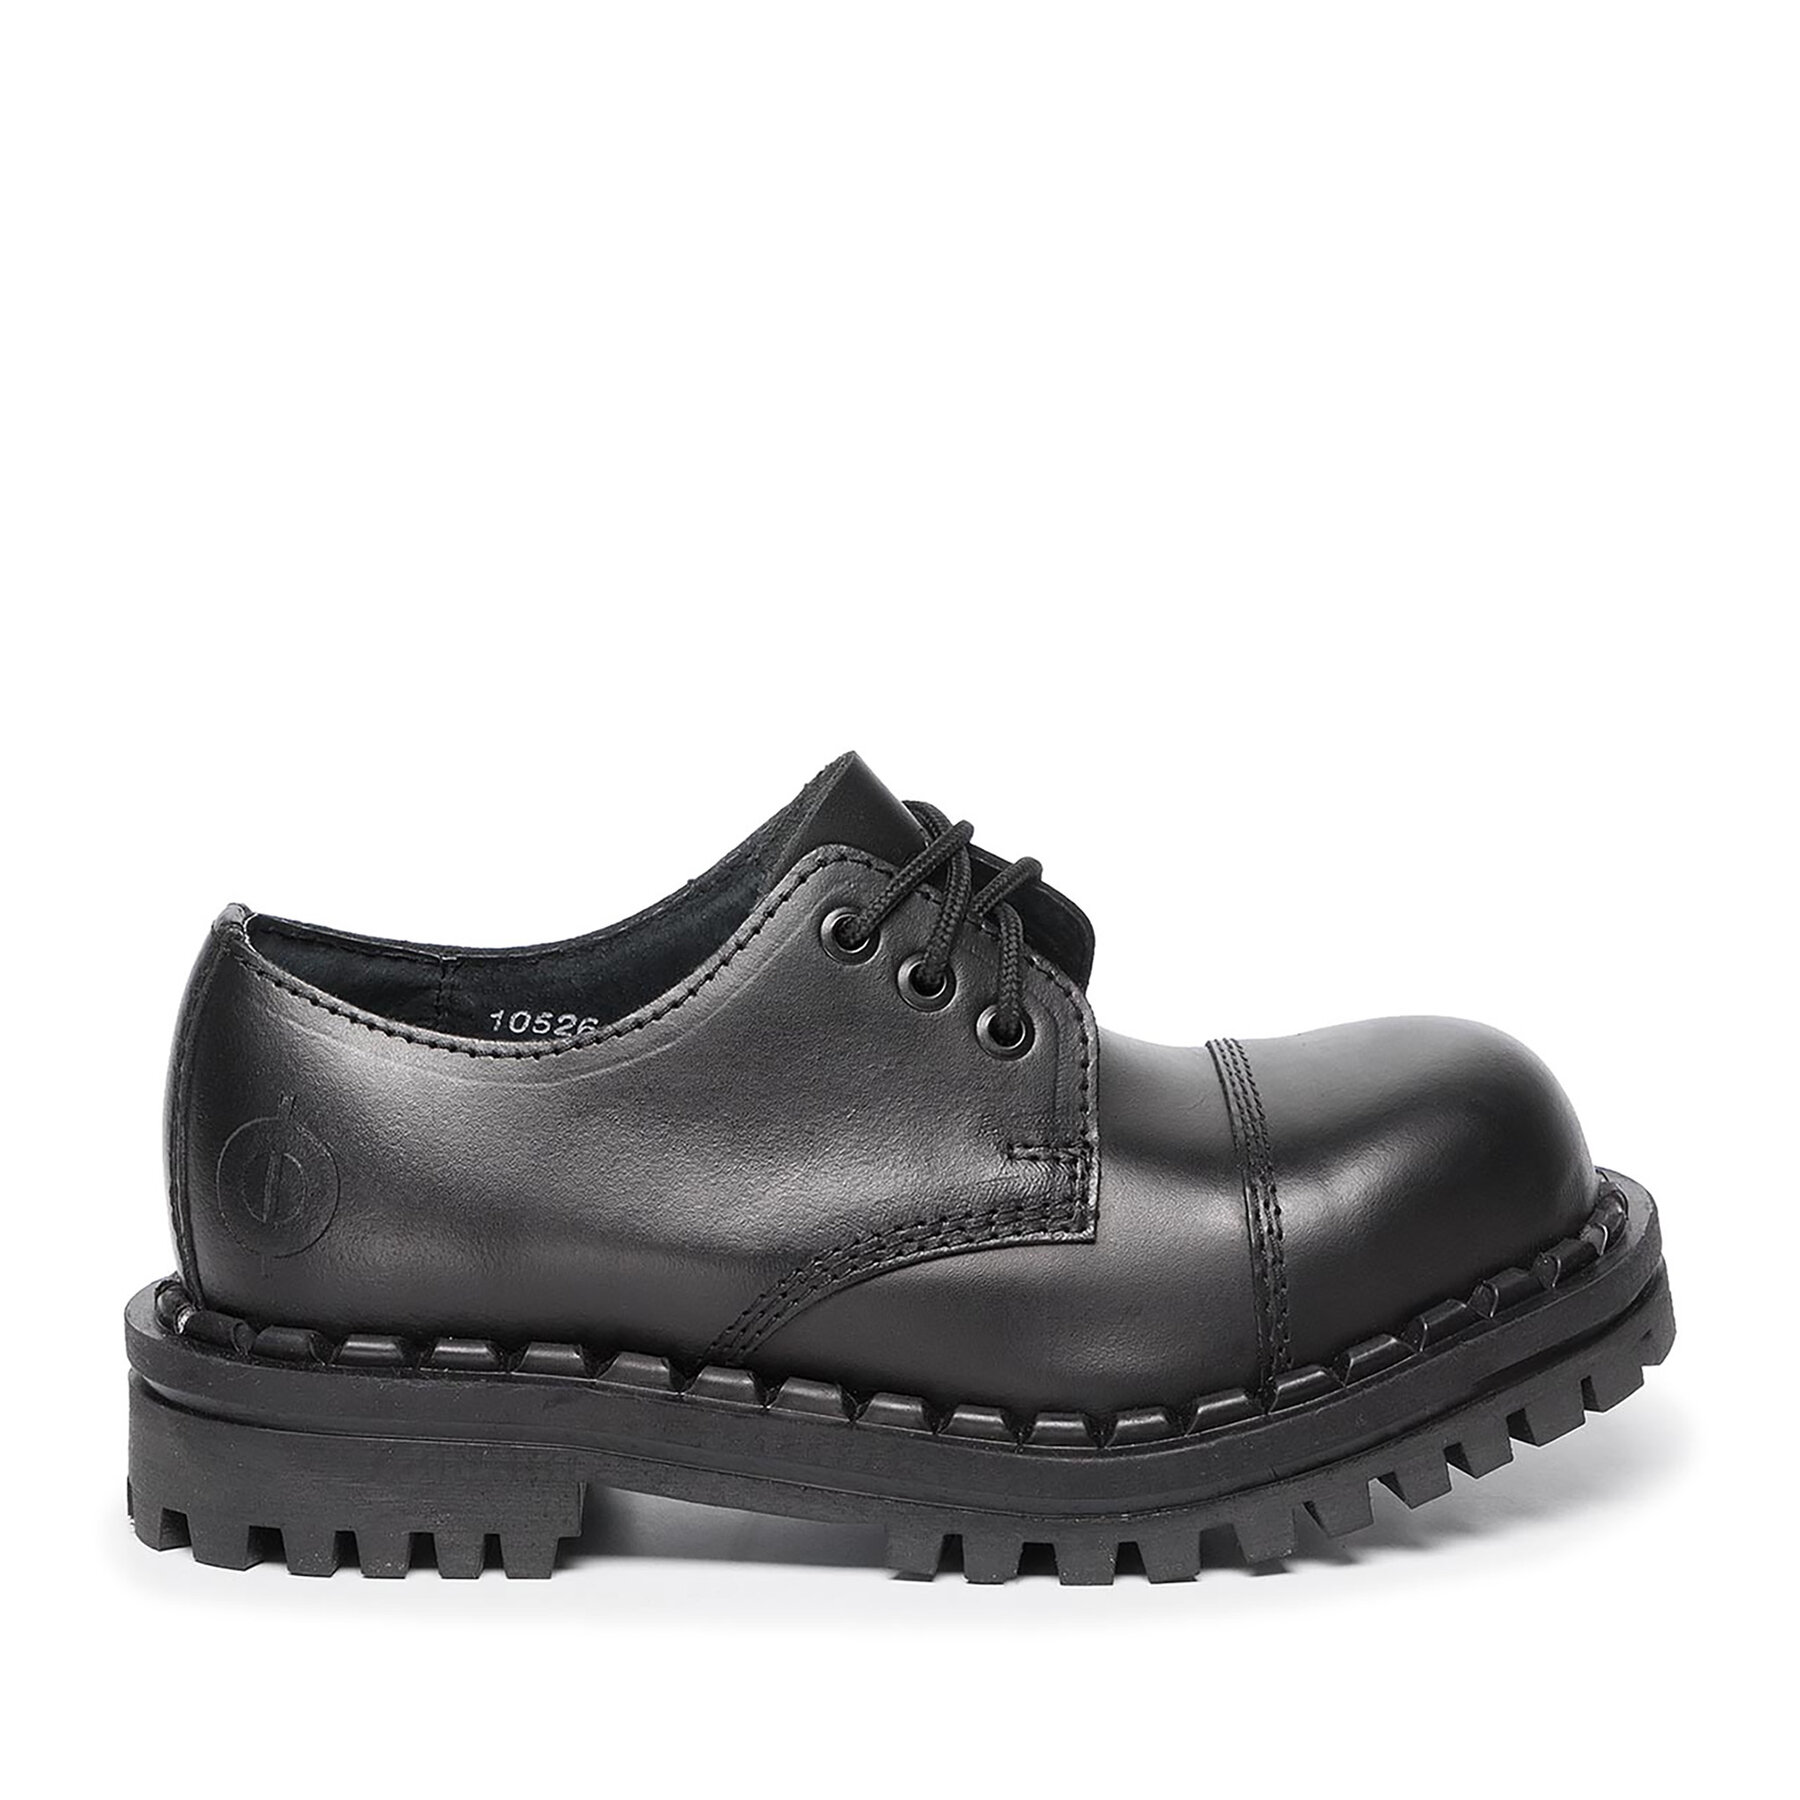 Cipele Altercore 350 Black1